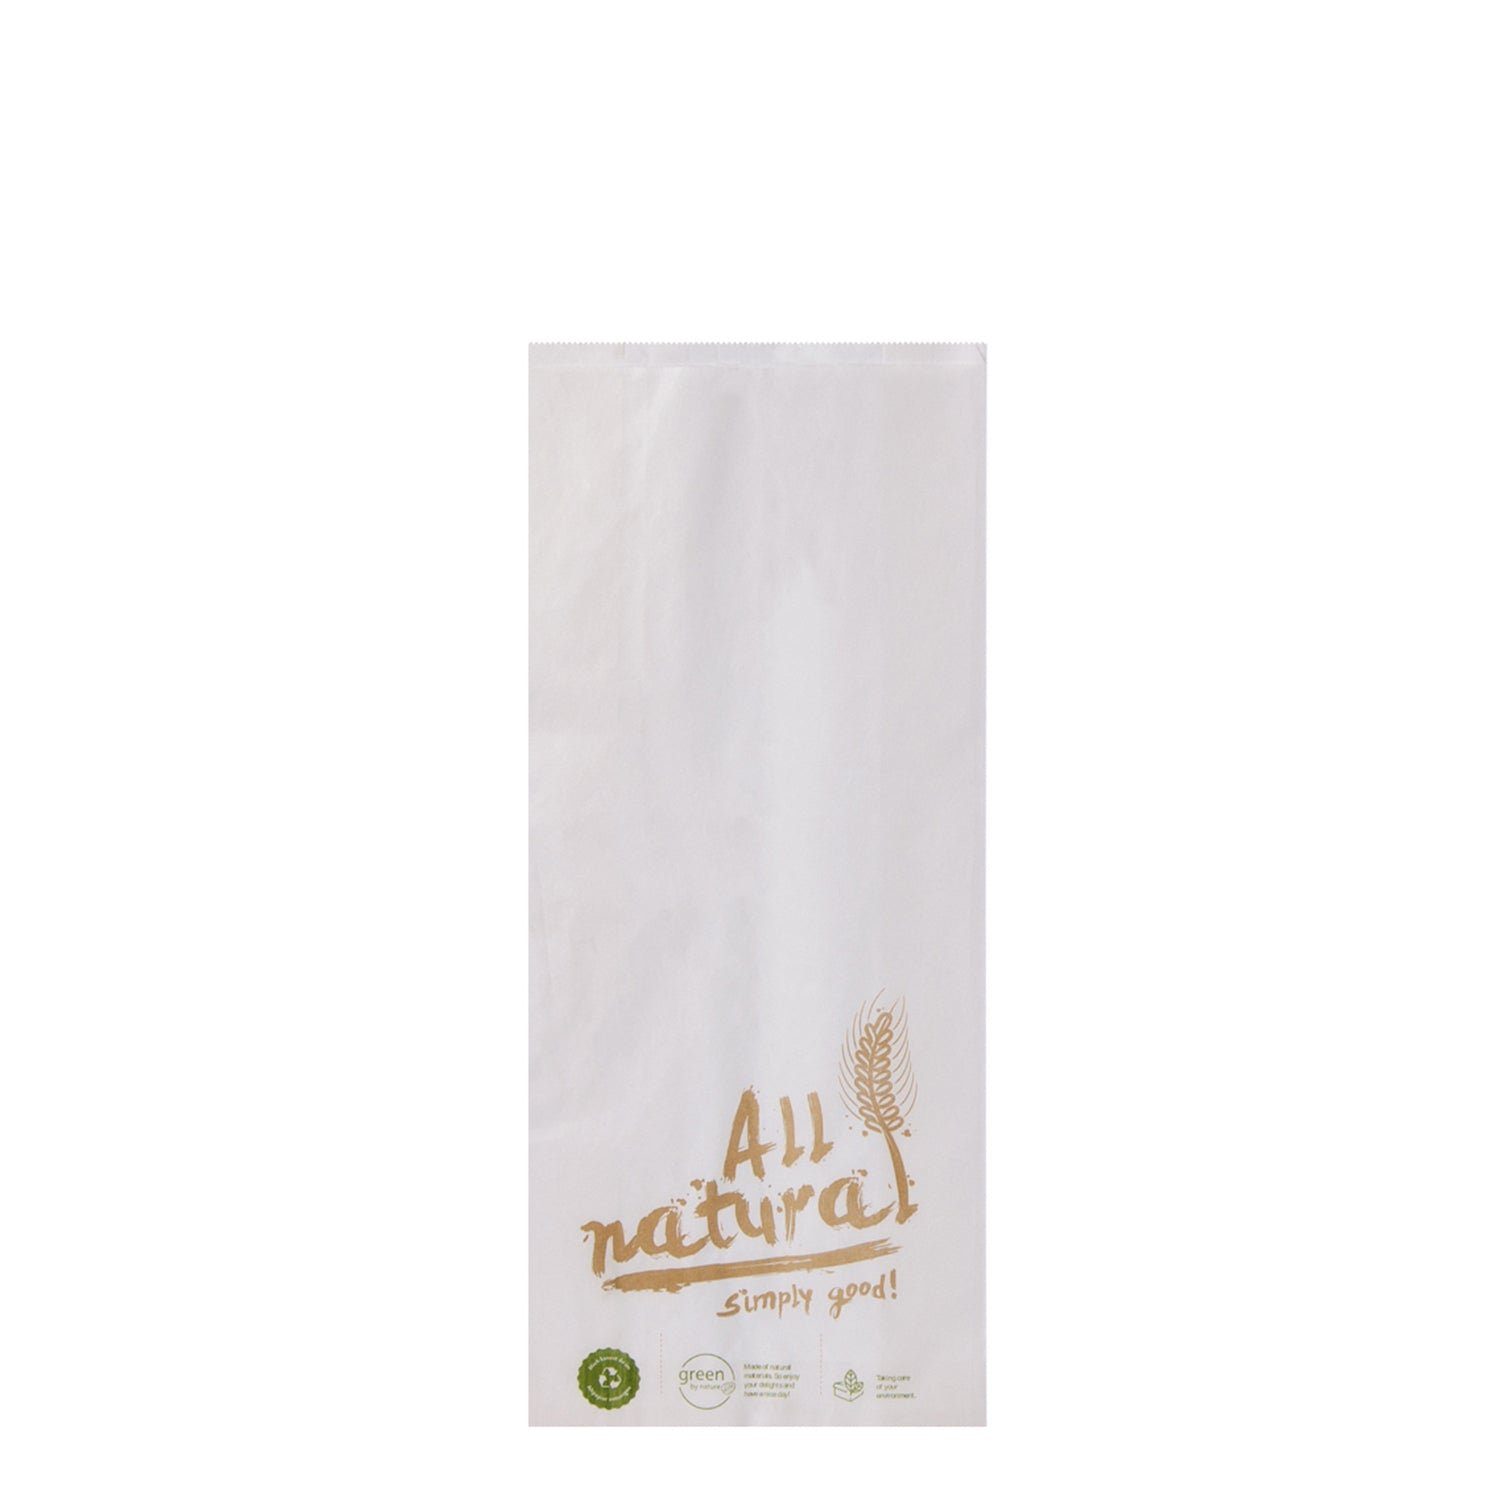 wisefood Einkaufsbeutel Papier Bäckertüte - weiß mit Print "All Natural"